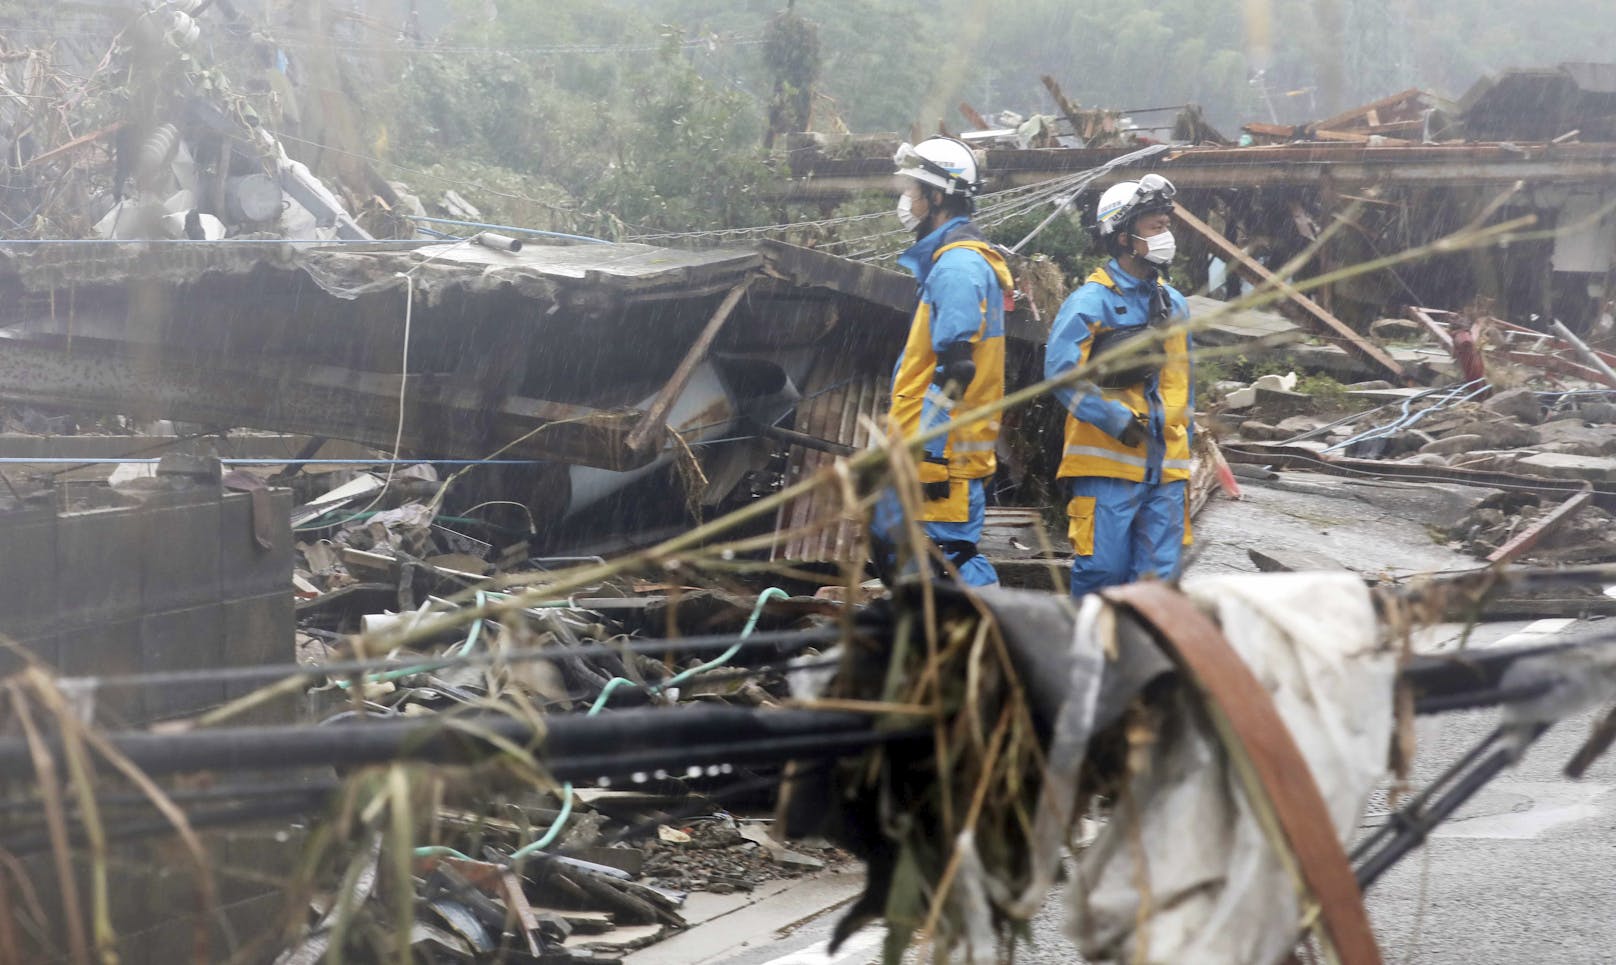 Einsatzkräfte suchen nach Murenabgängen und Überflutungen unter den Trümmern von Häusern nach möglichen Verschütteten. Aufgenommen in Kuma, Präfektur Kumamoto, am 7. Juli 2020